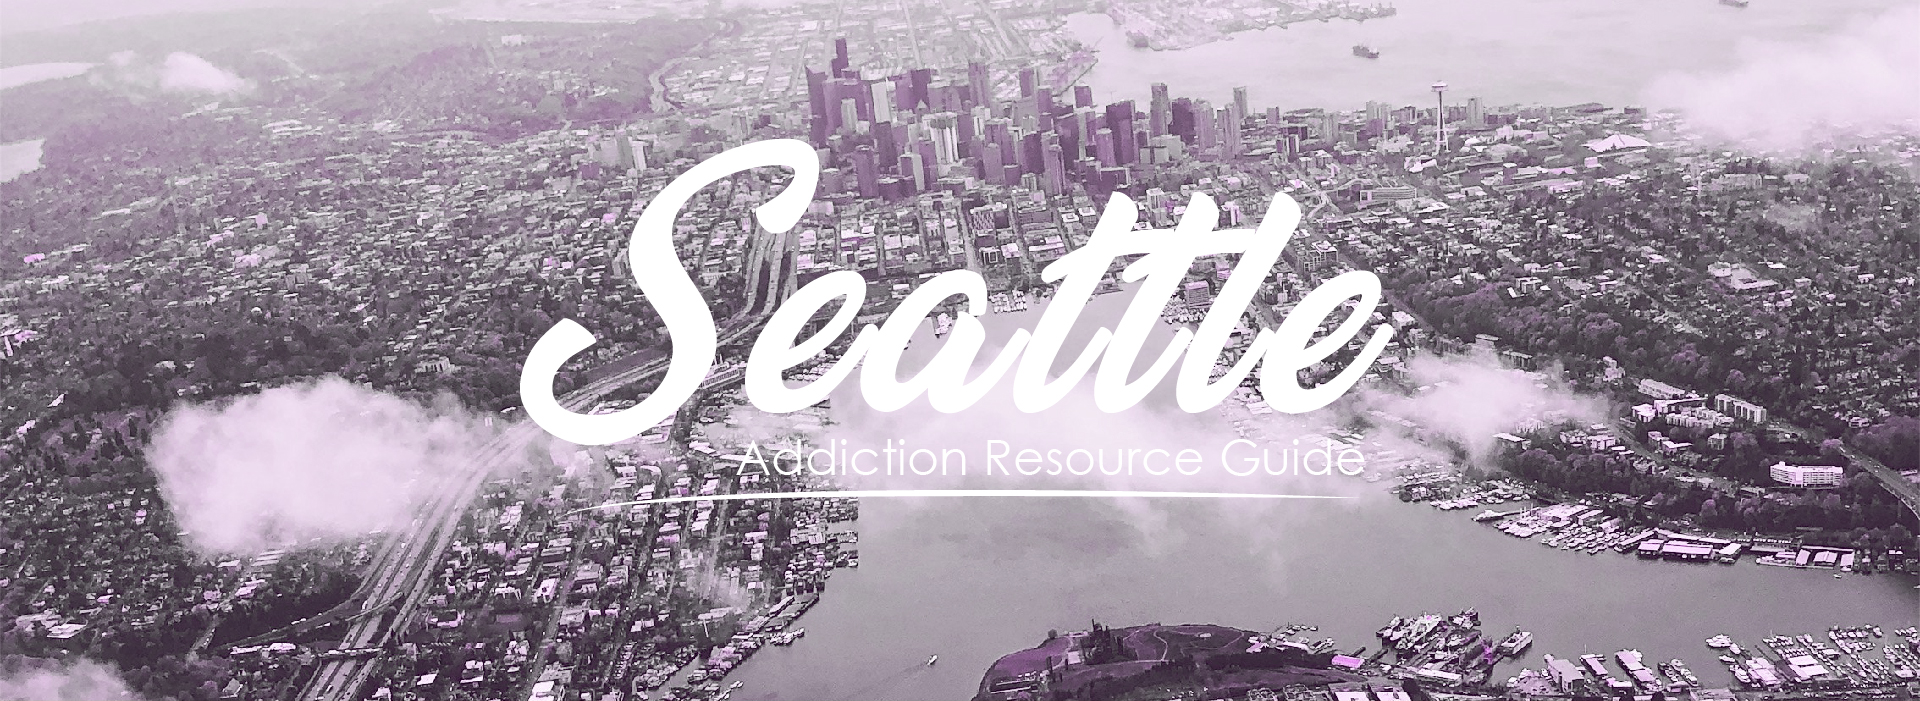 Seattle, Washington addiction resources